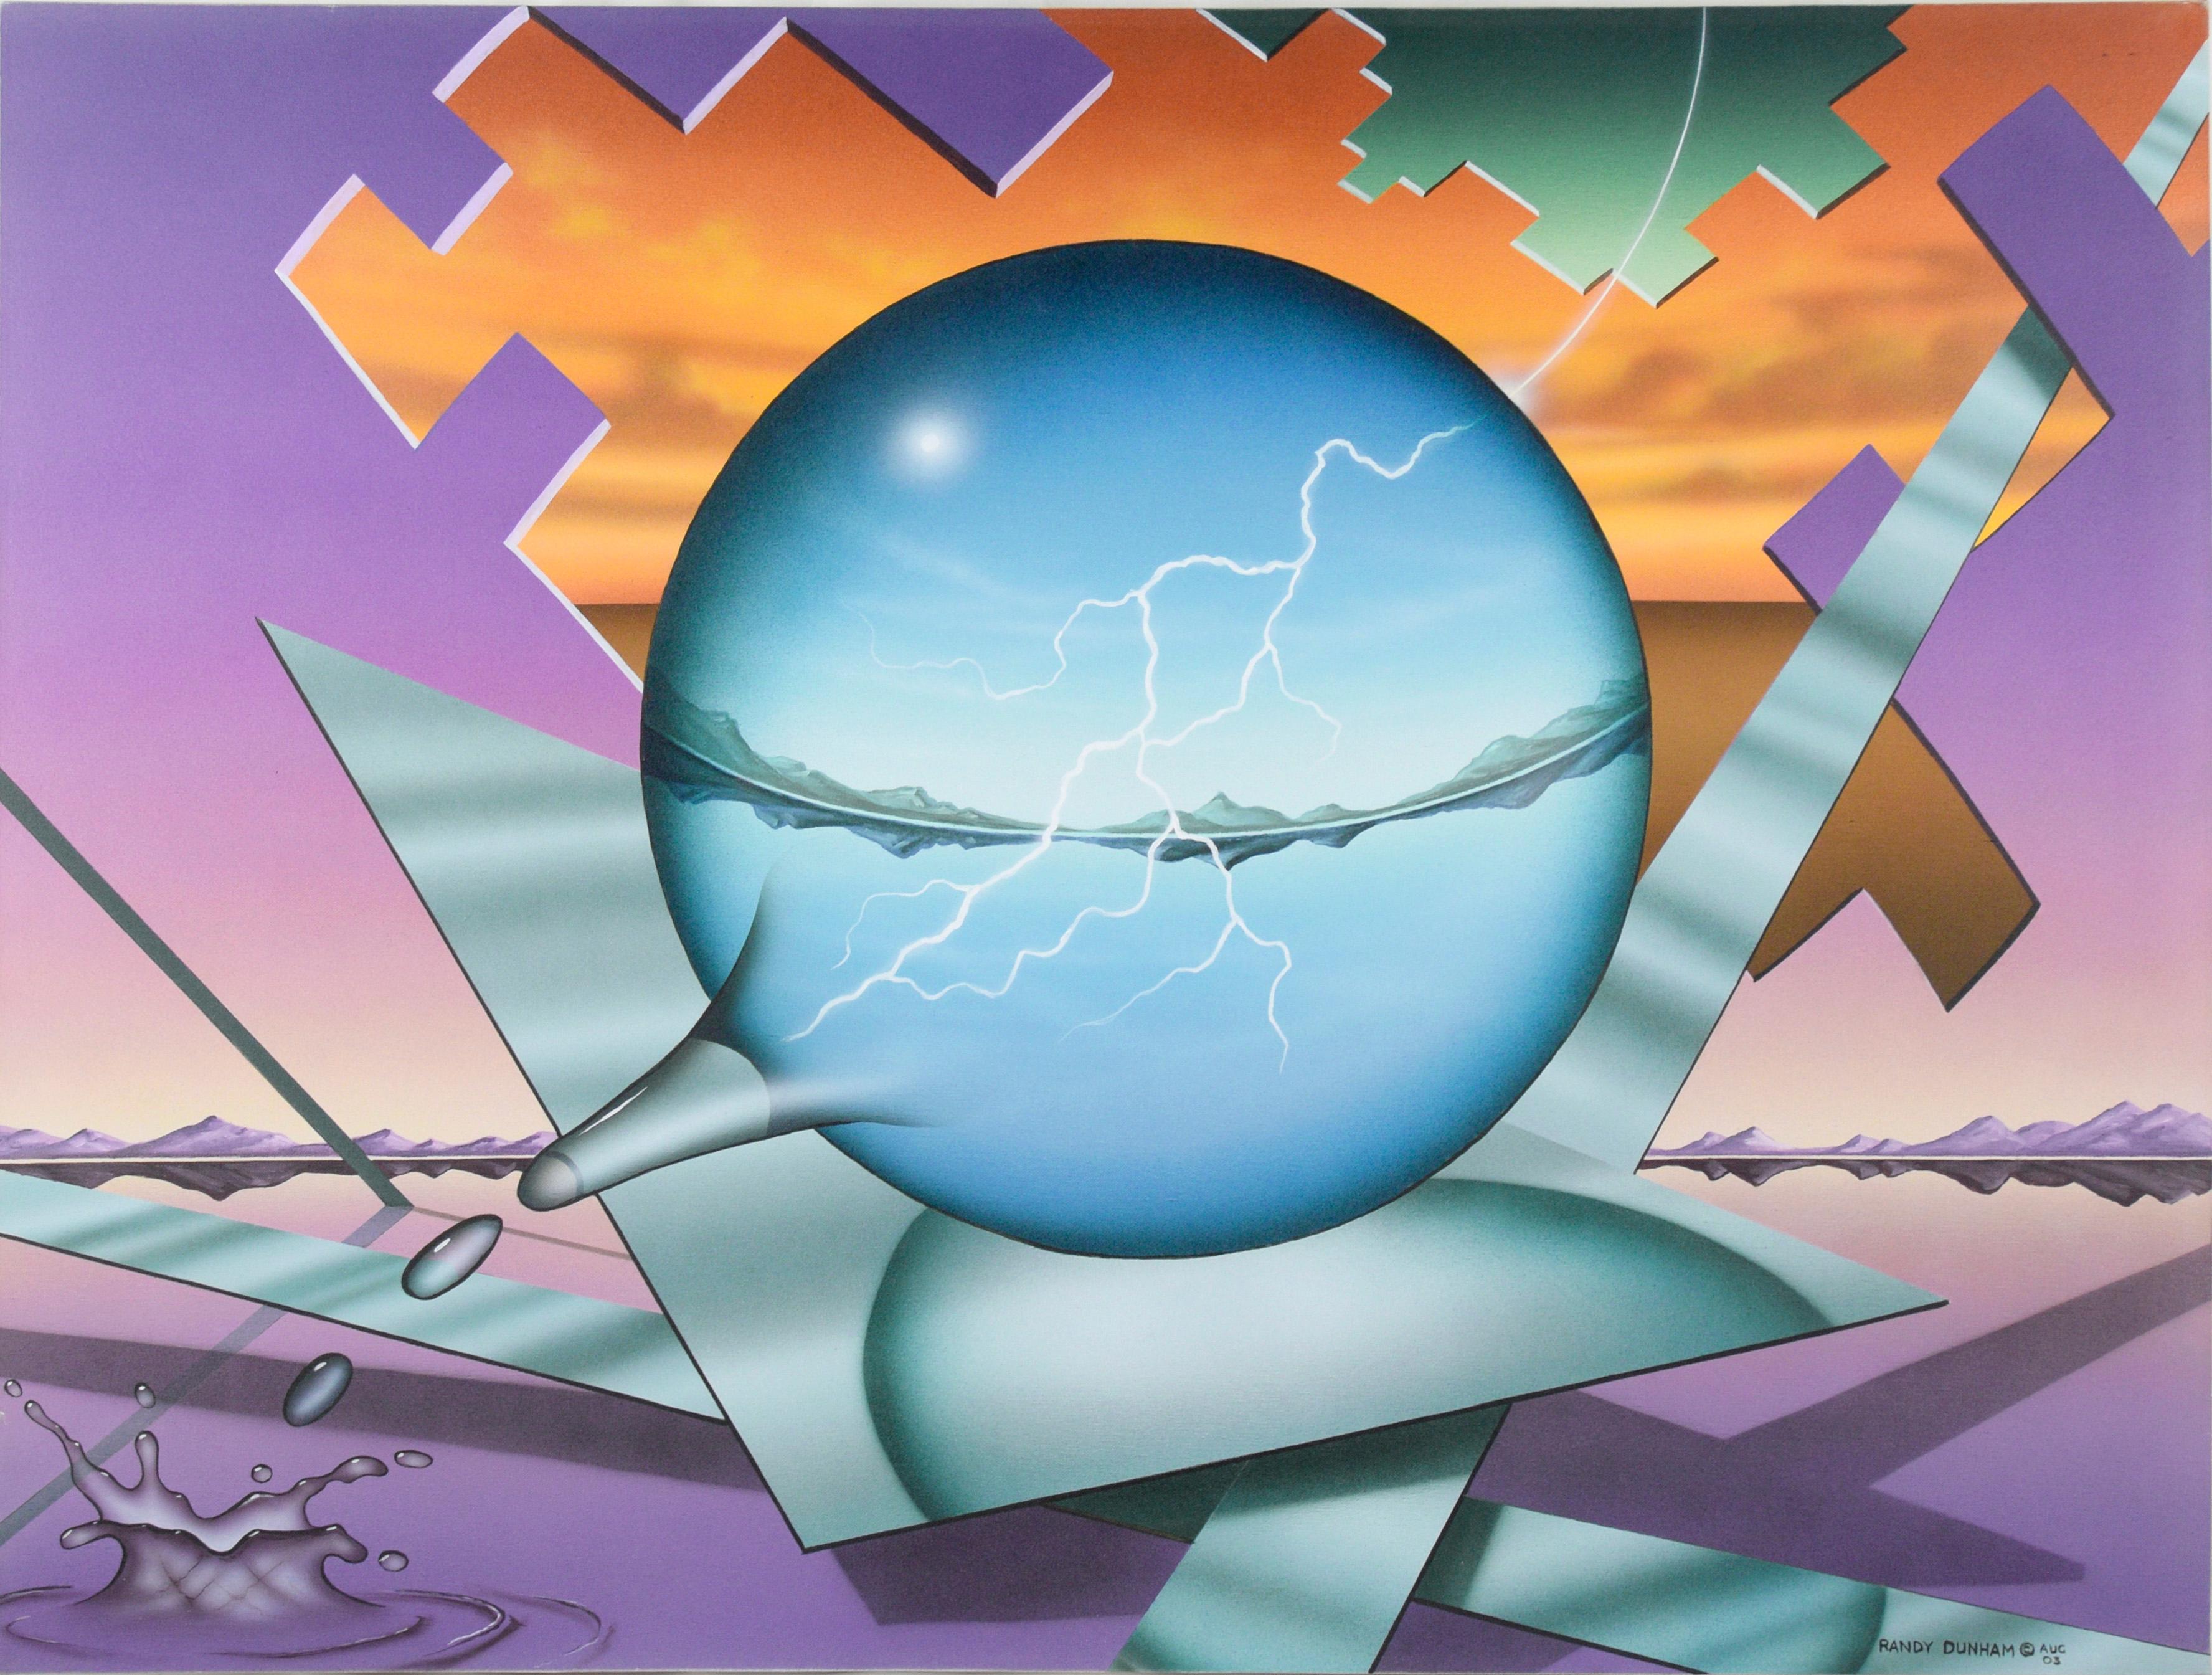 Randy Dunham Landscape Painting – „Striking“ Natures Balance – Geometrische, surrealistische Landschaft in Acryl auf Leinwand